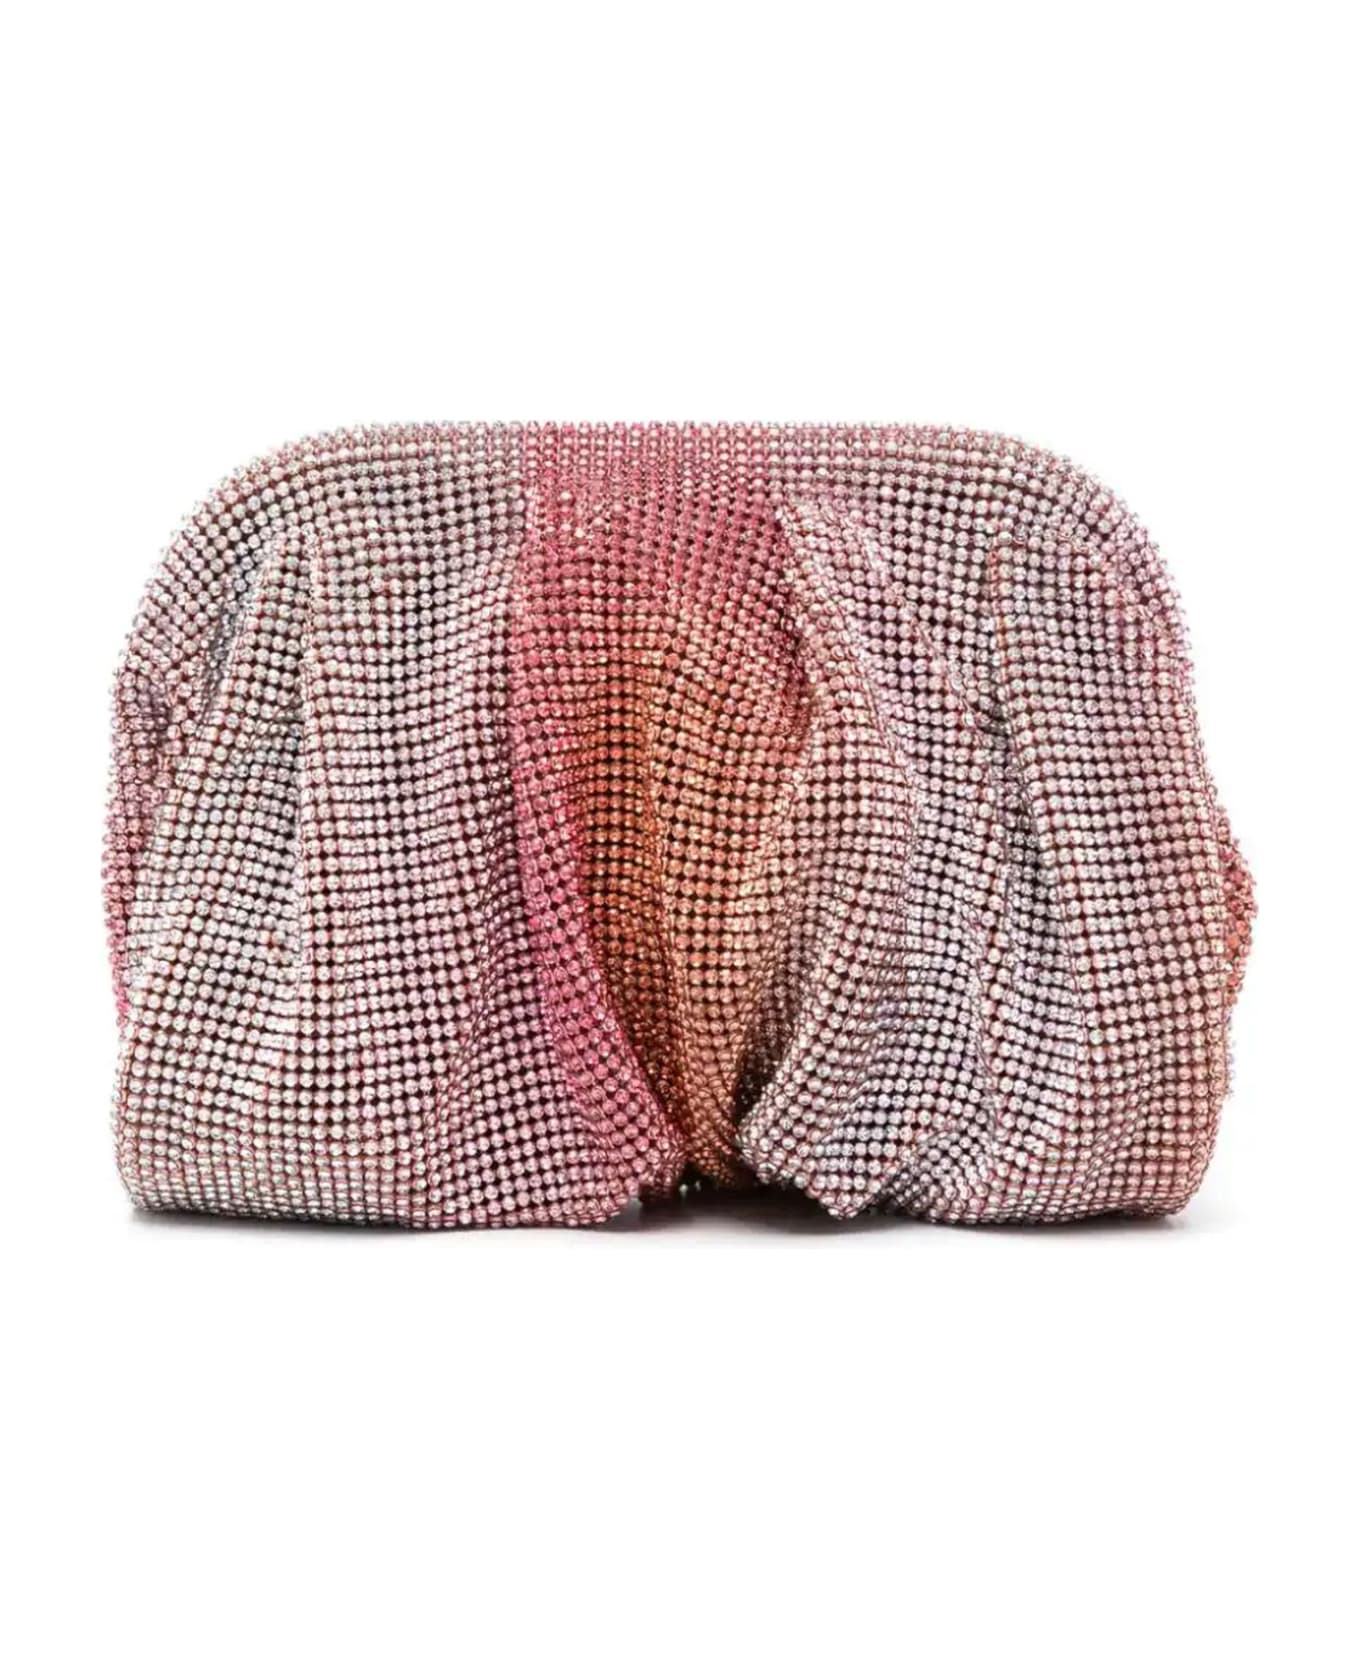 Benedetta Bruzziches Raspberry Pink Venus Petite Crystal Clutch Bag - Rose